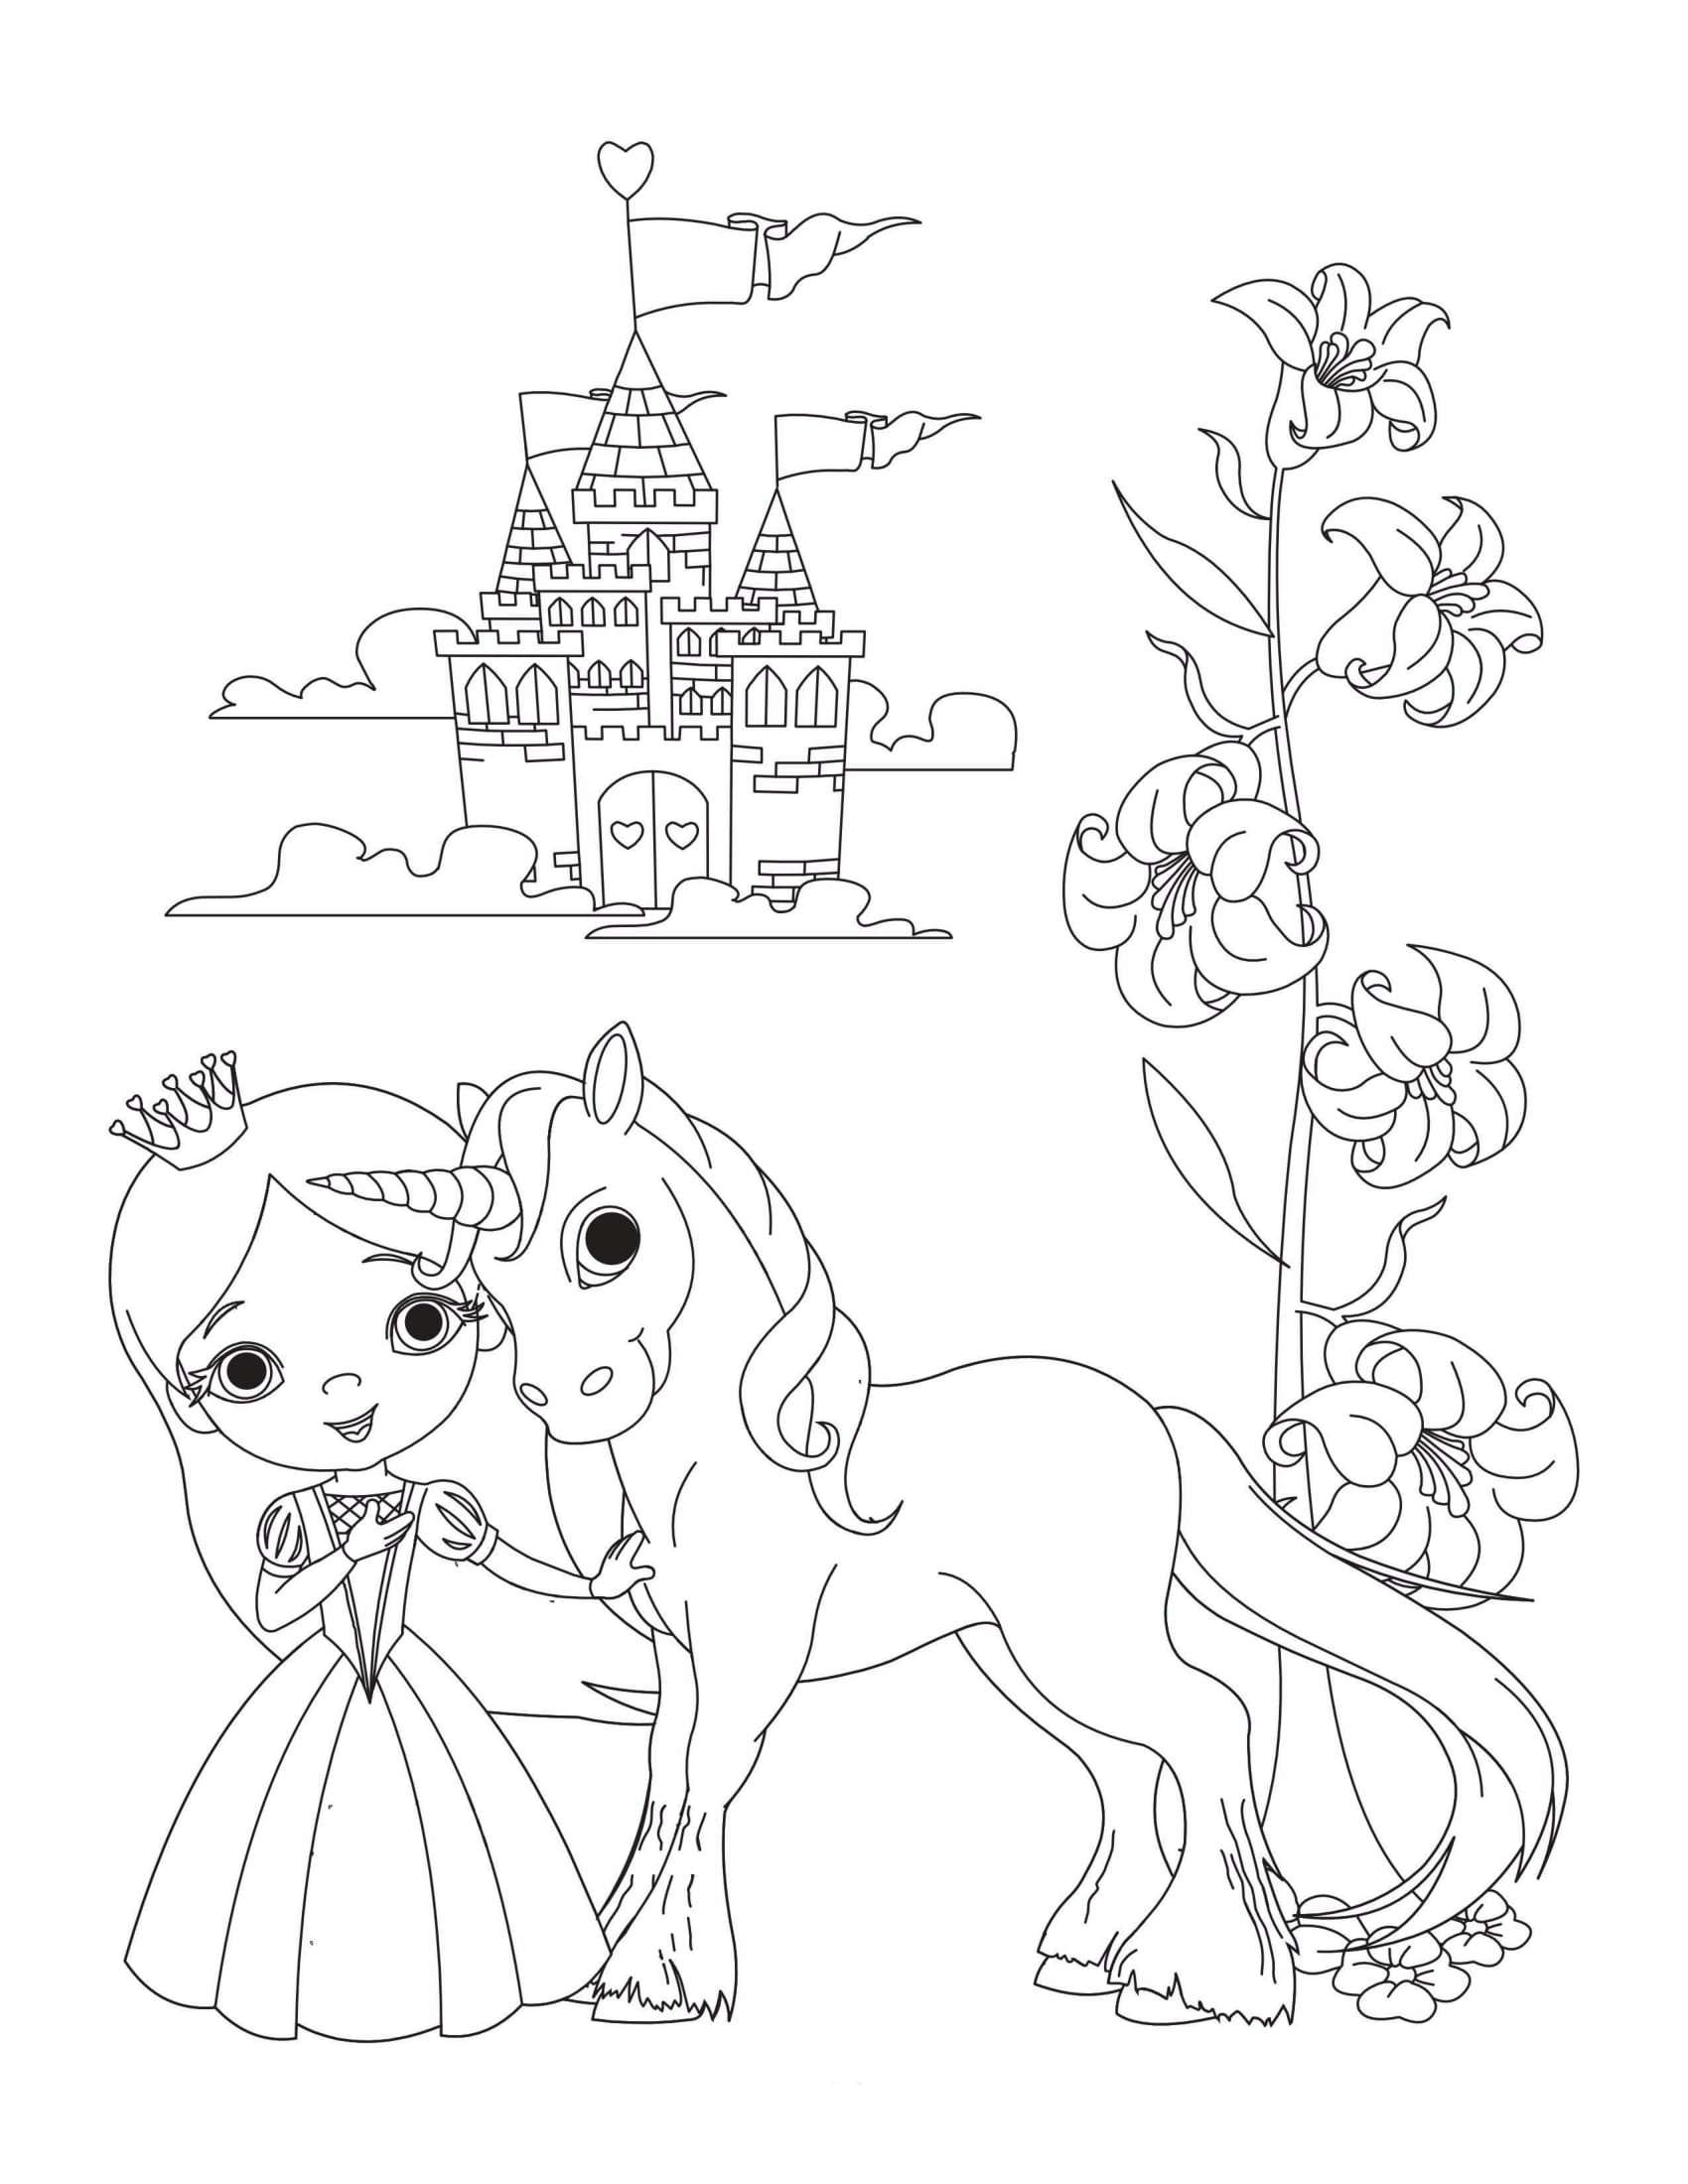 Unicorn and a princess near the flowers â